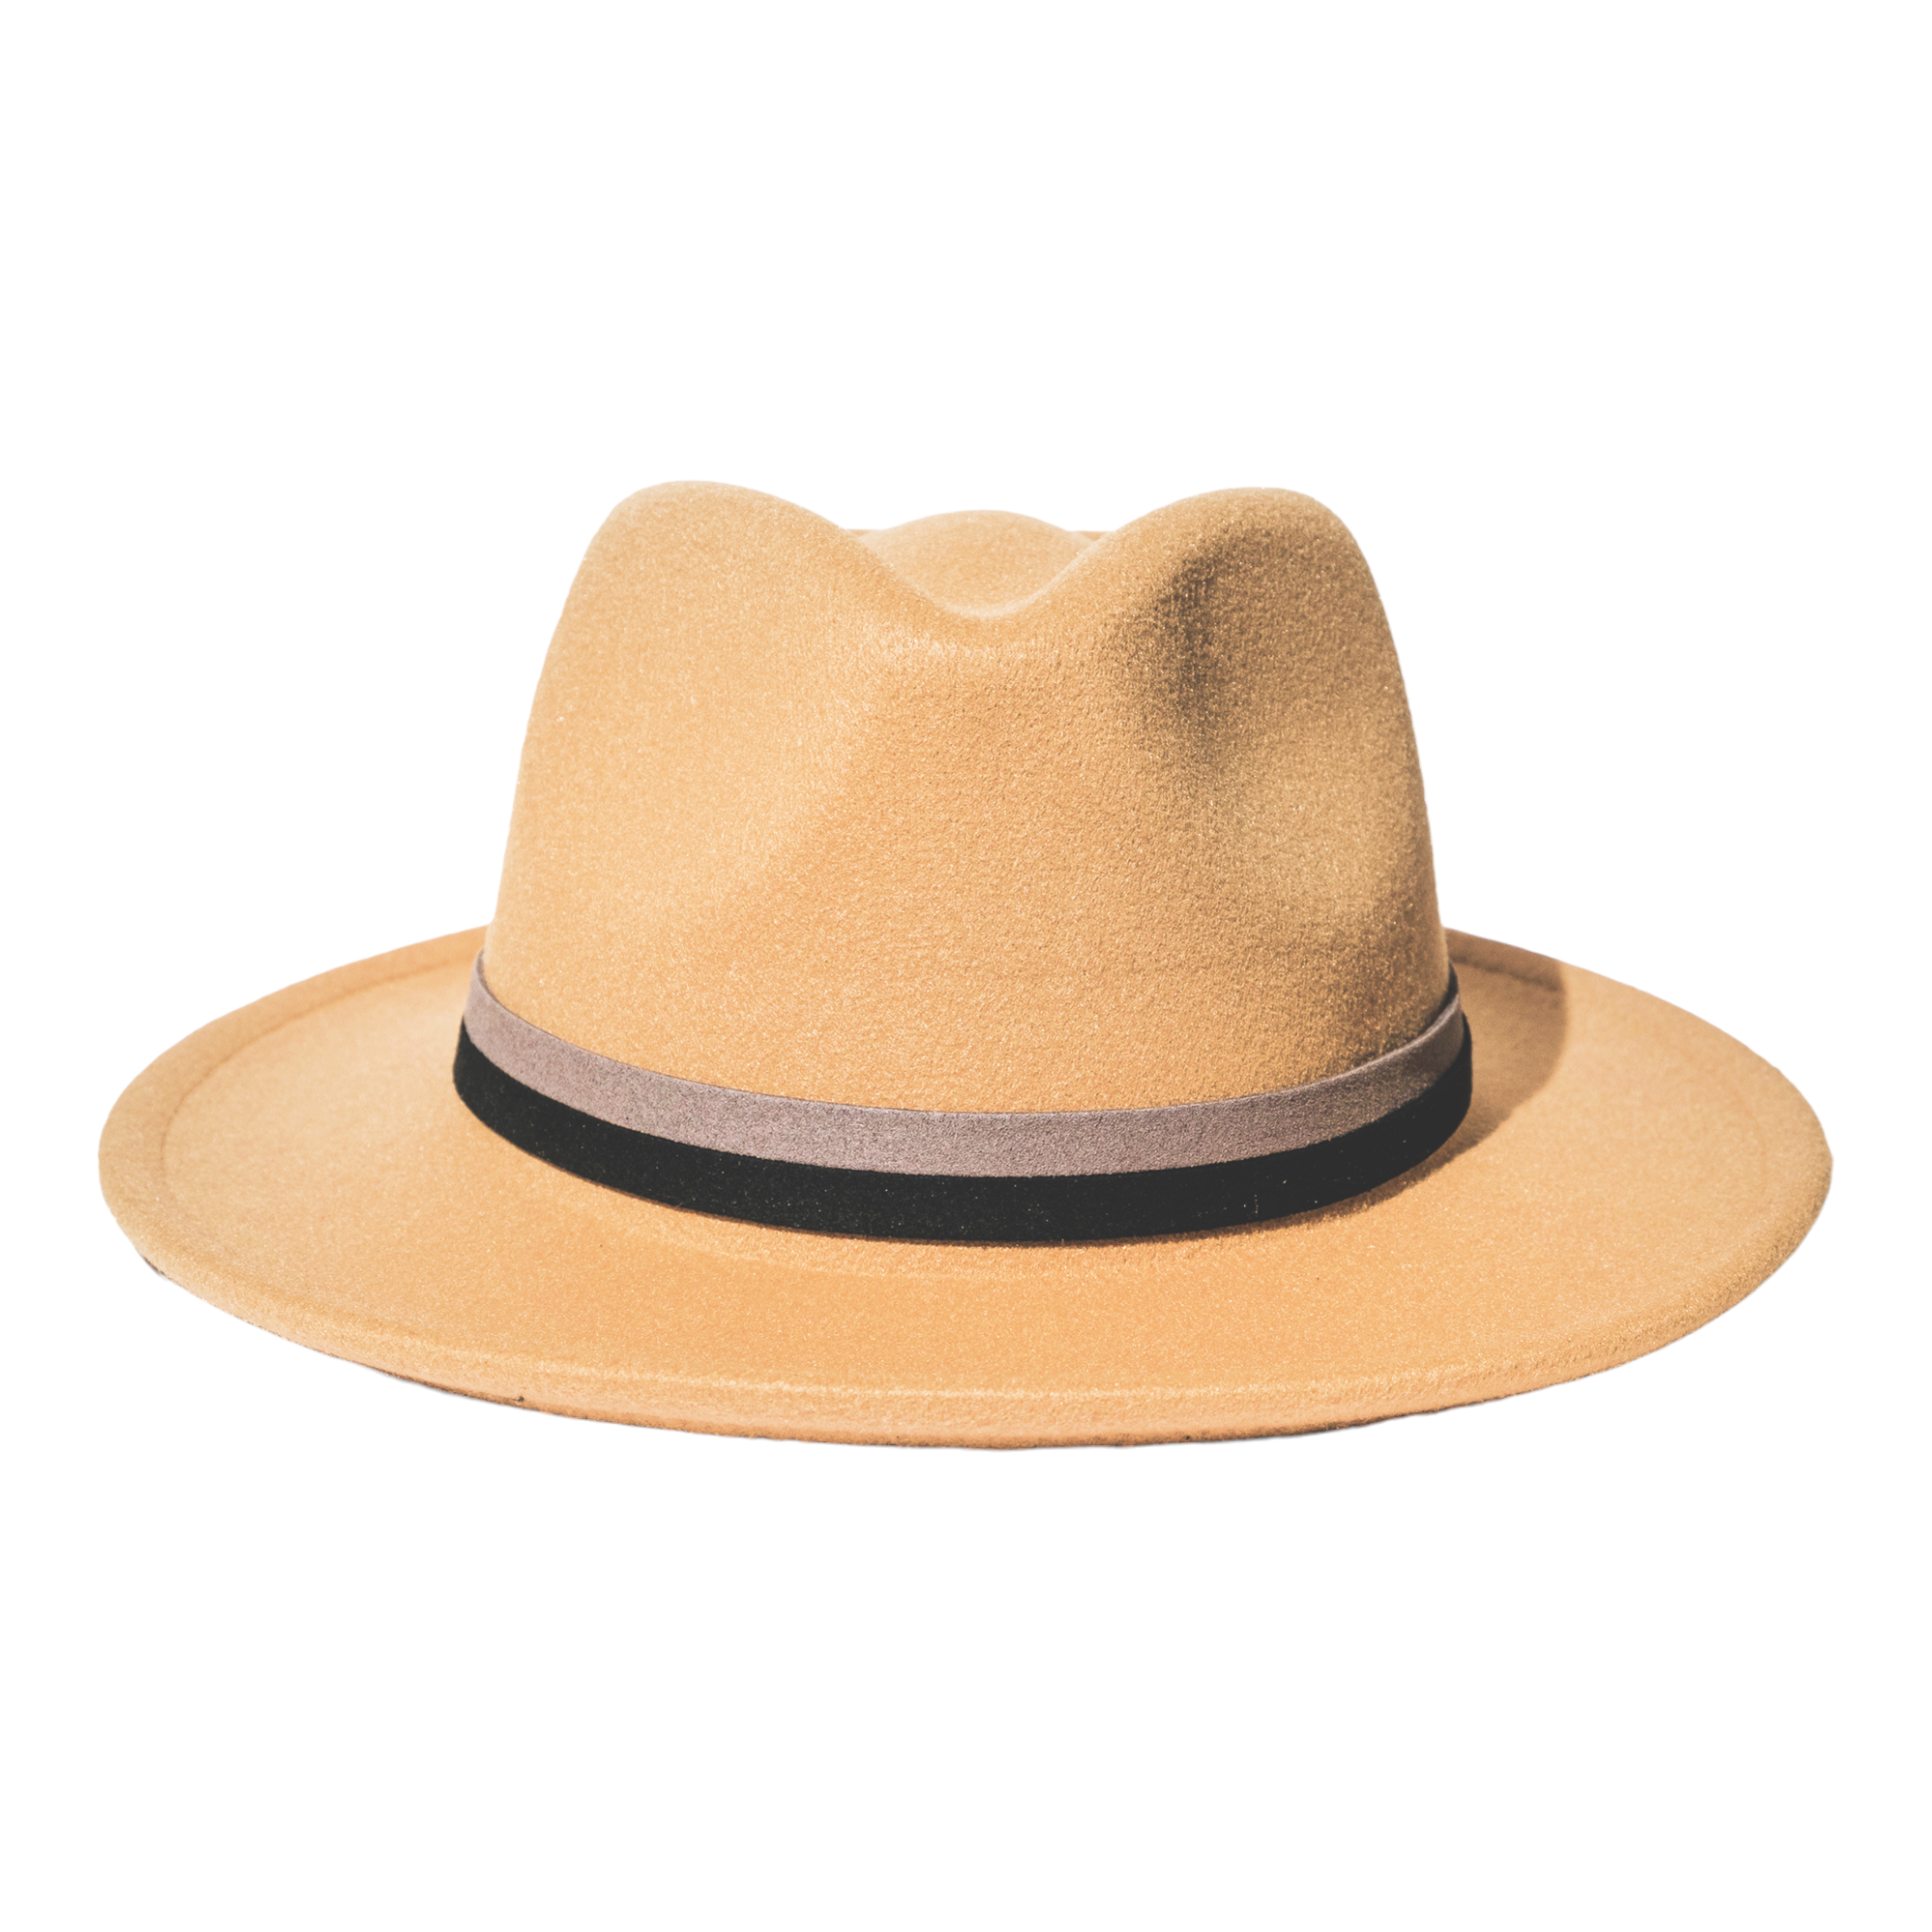 Chokore Vintage Fedora Hat (Beige)